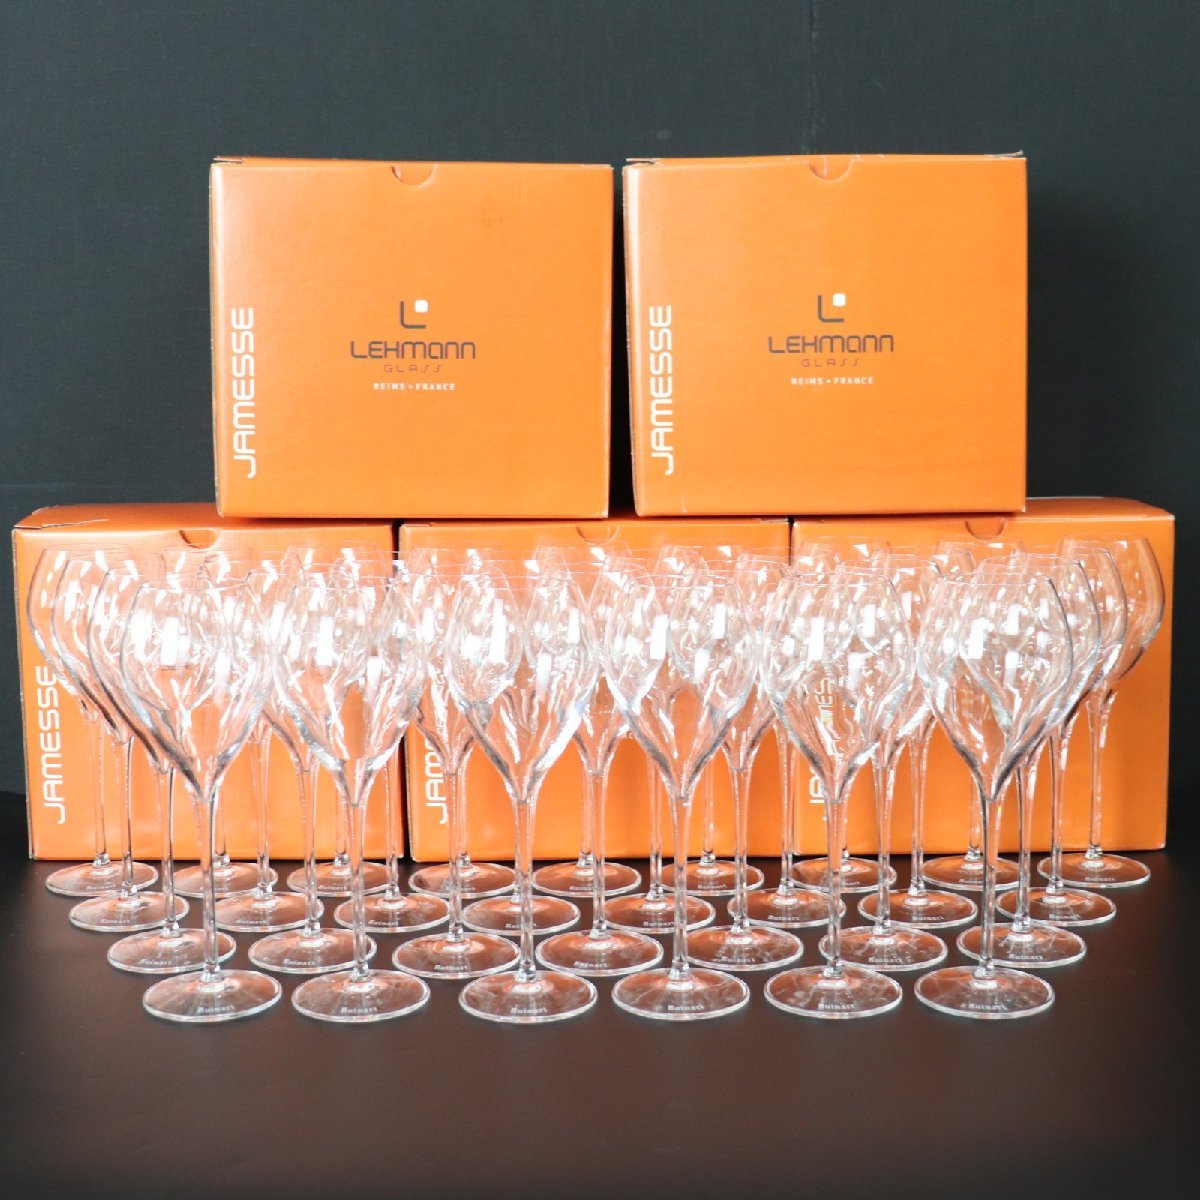 ITQEAANDNIT0 即決 本物 LEHMANN レーマン ガラス シャンパン ワイン グラス ルイナール刻印 食器 6本×5ケース まとめ セットの画像1